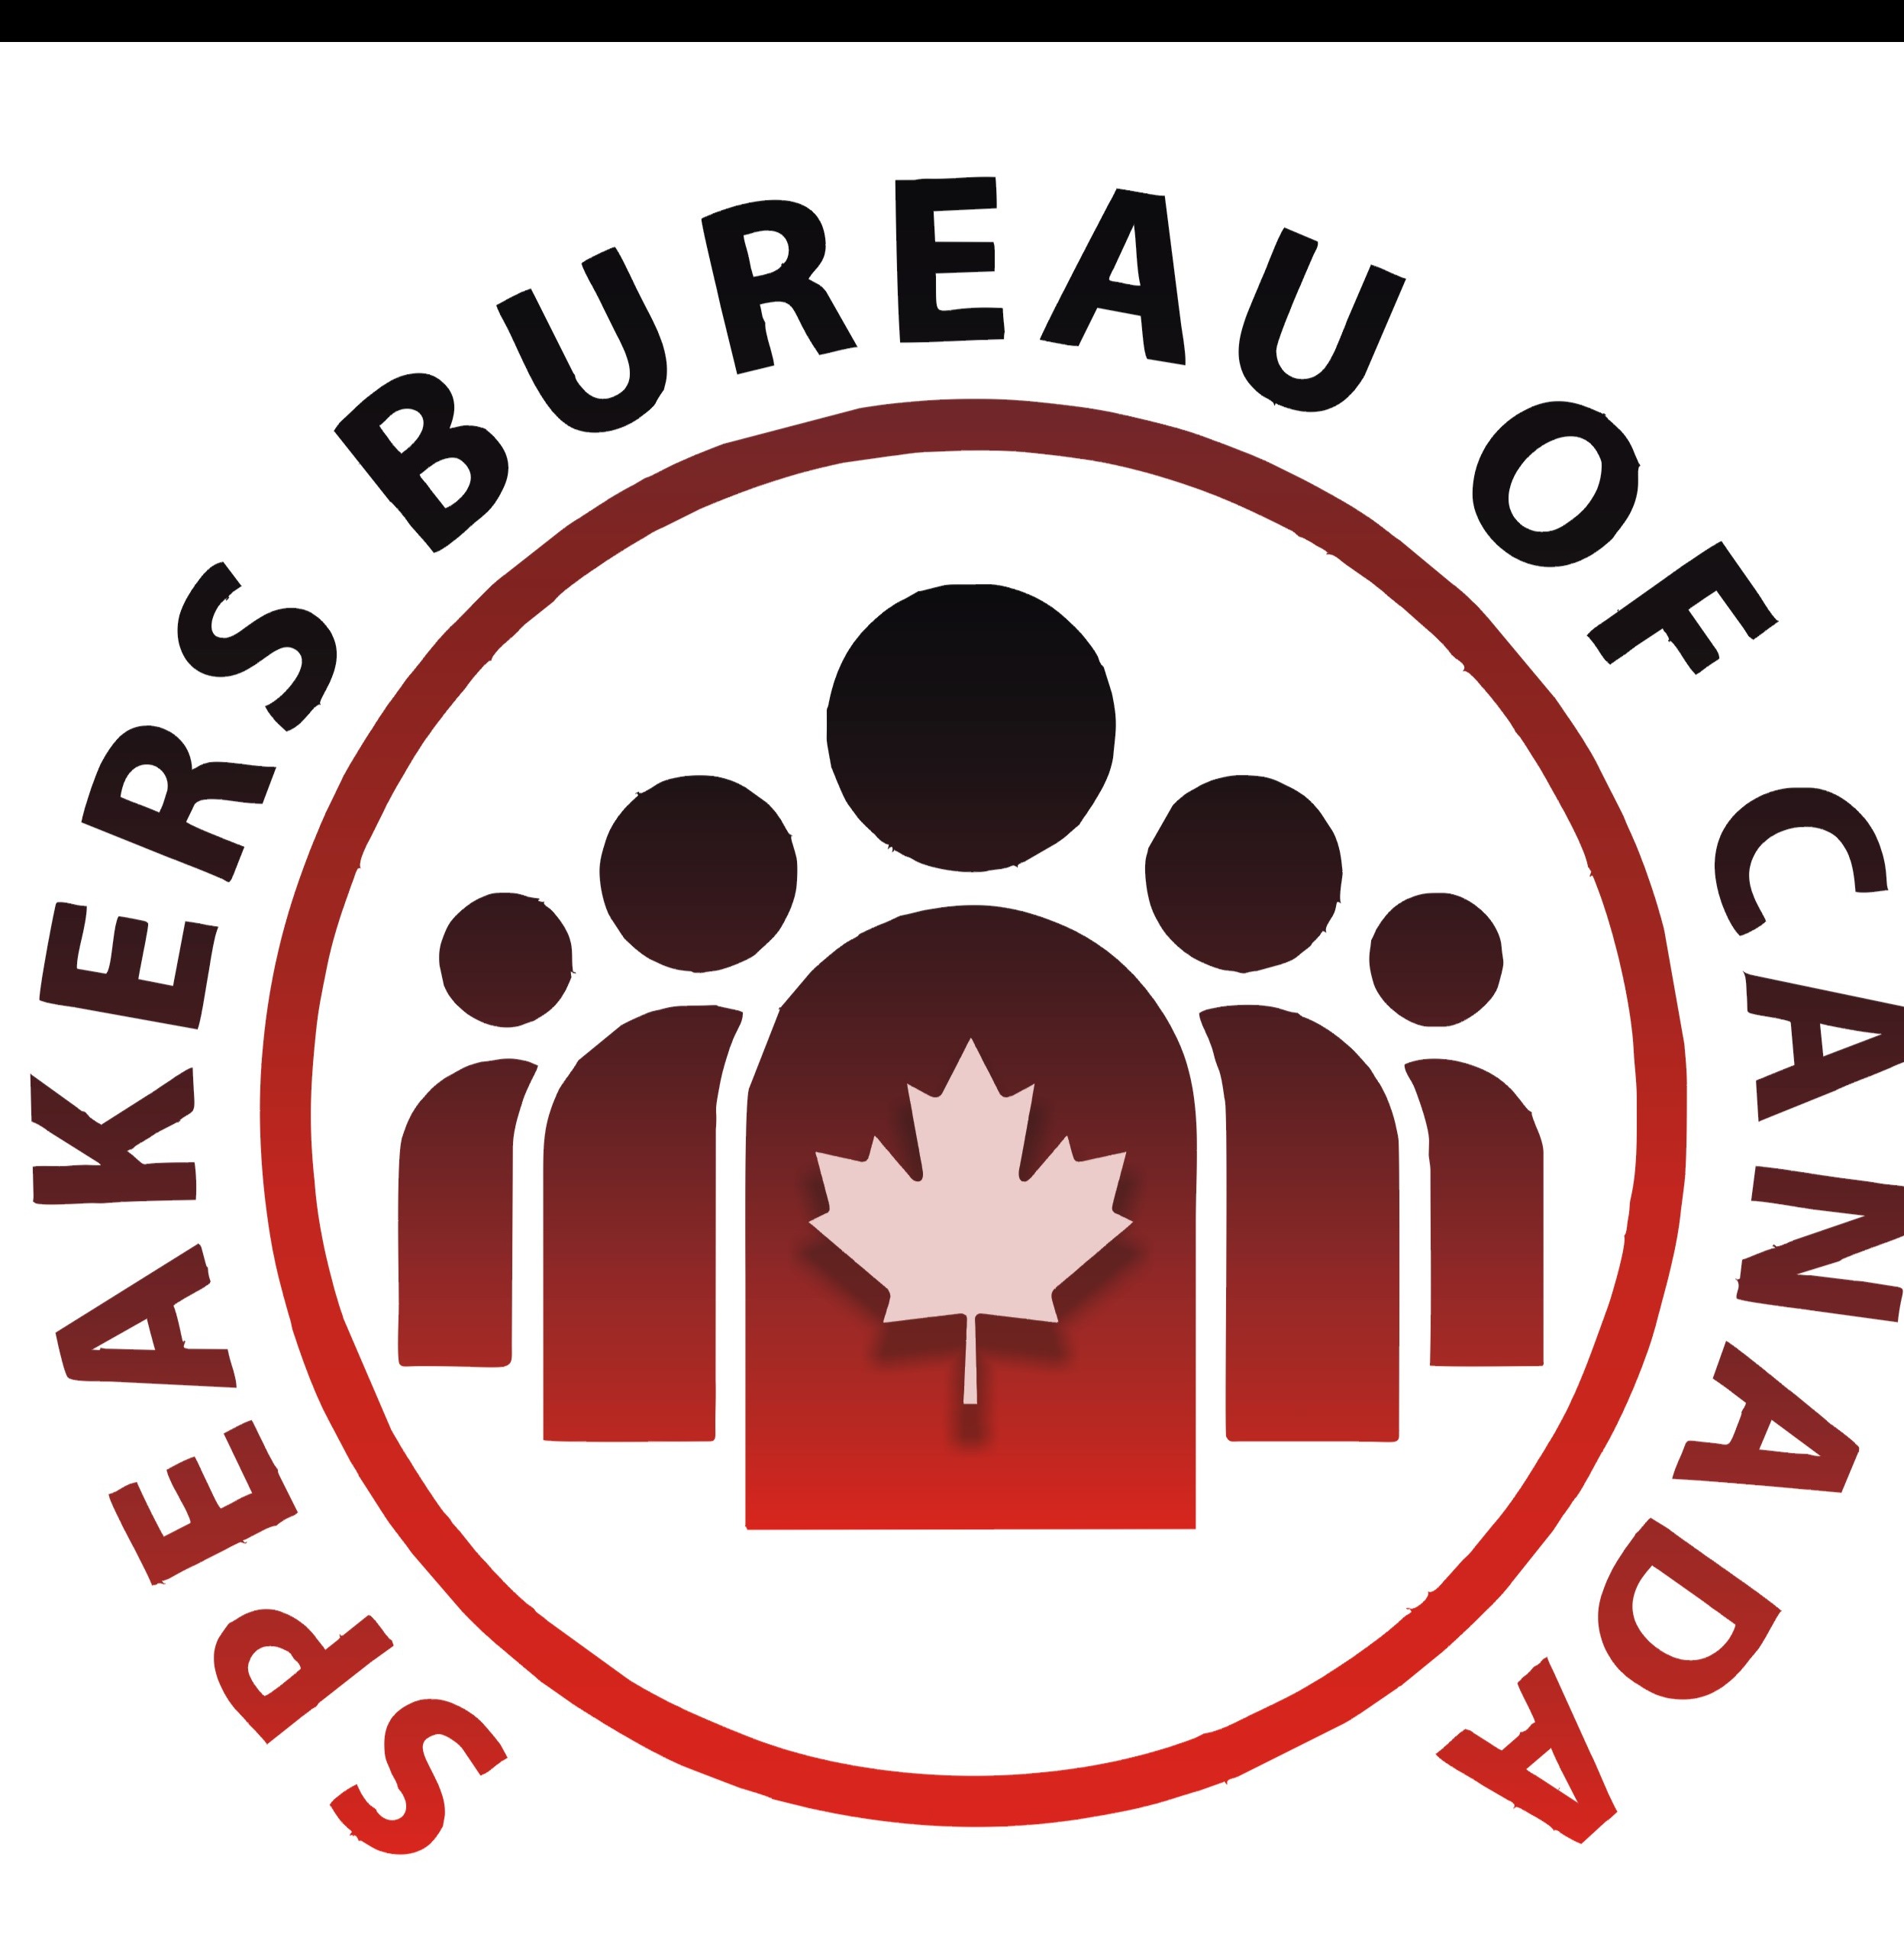 Speakers Bureau of Canada